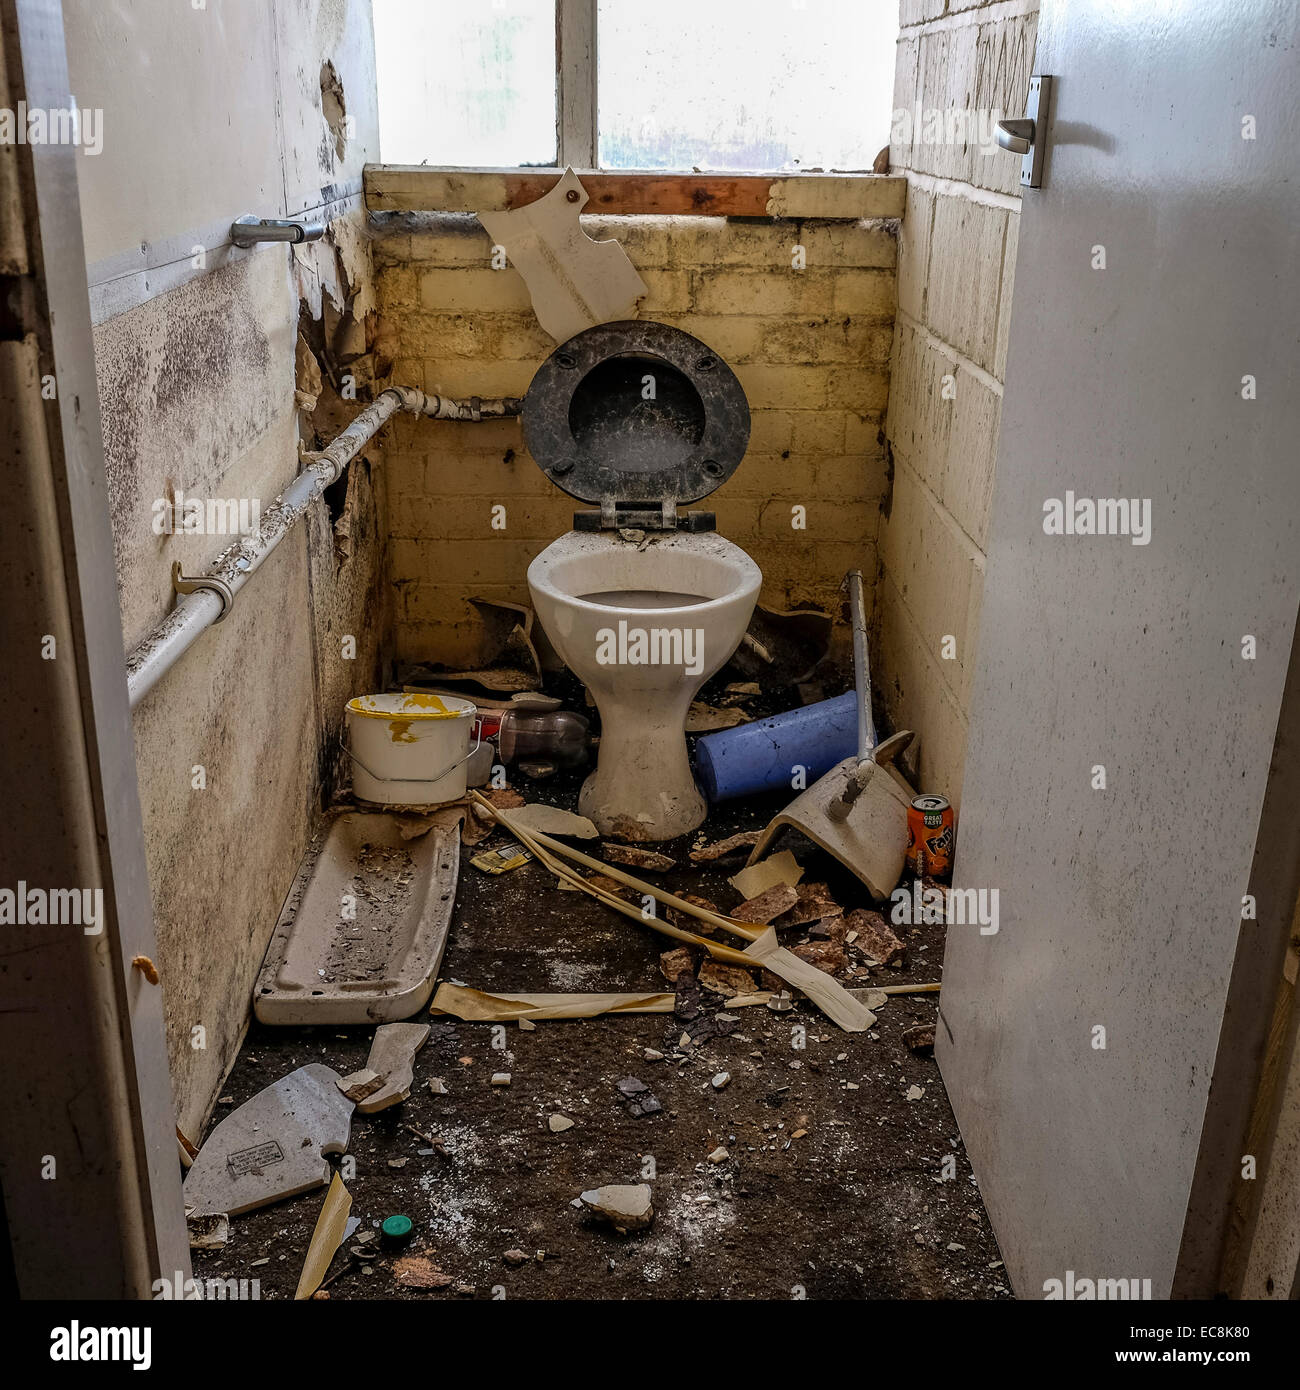 Toilette cassée Banque de photographies et d'images à haute résolution -  Alamy